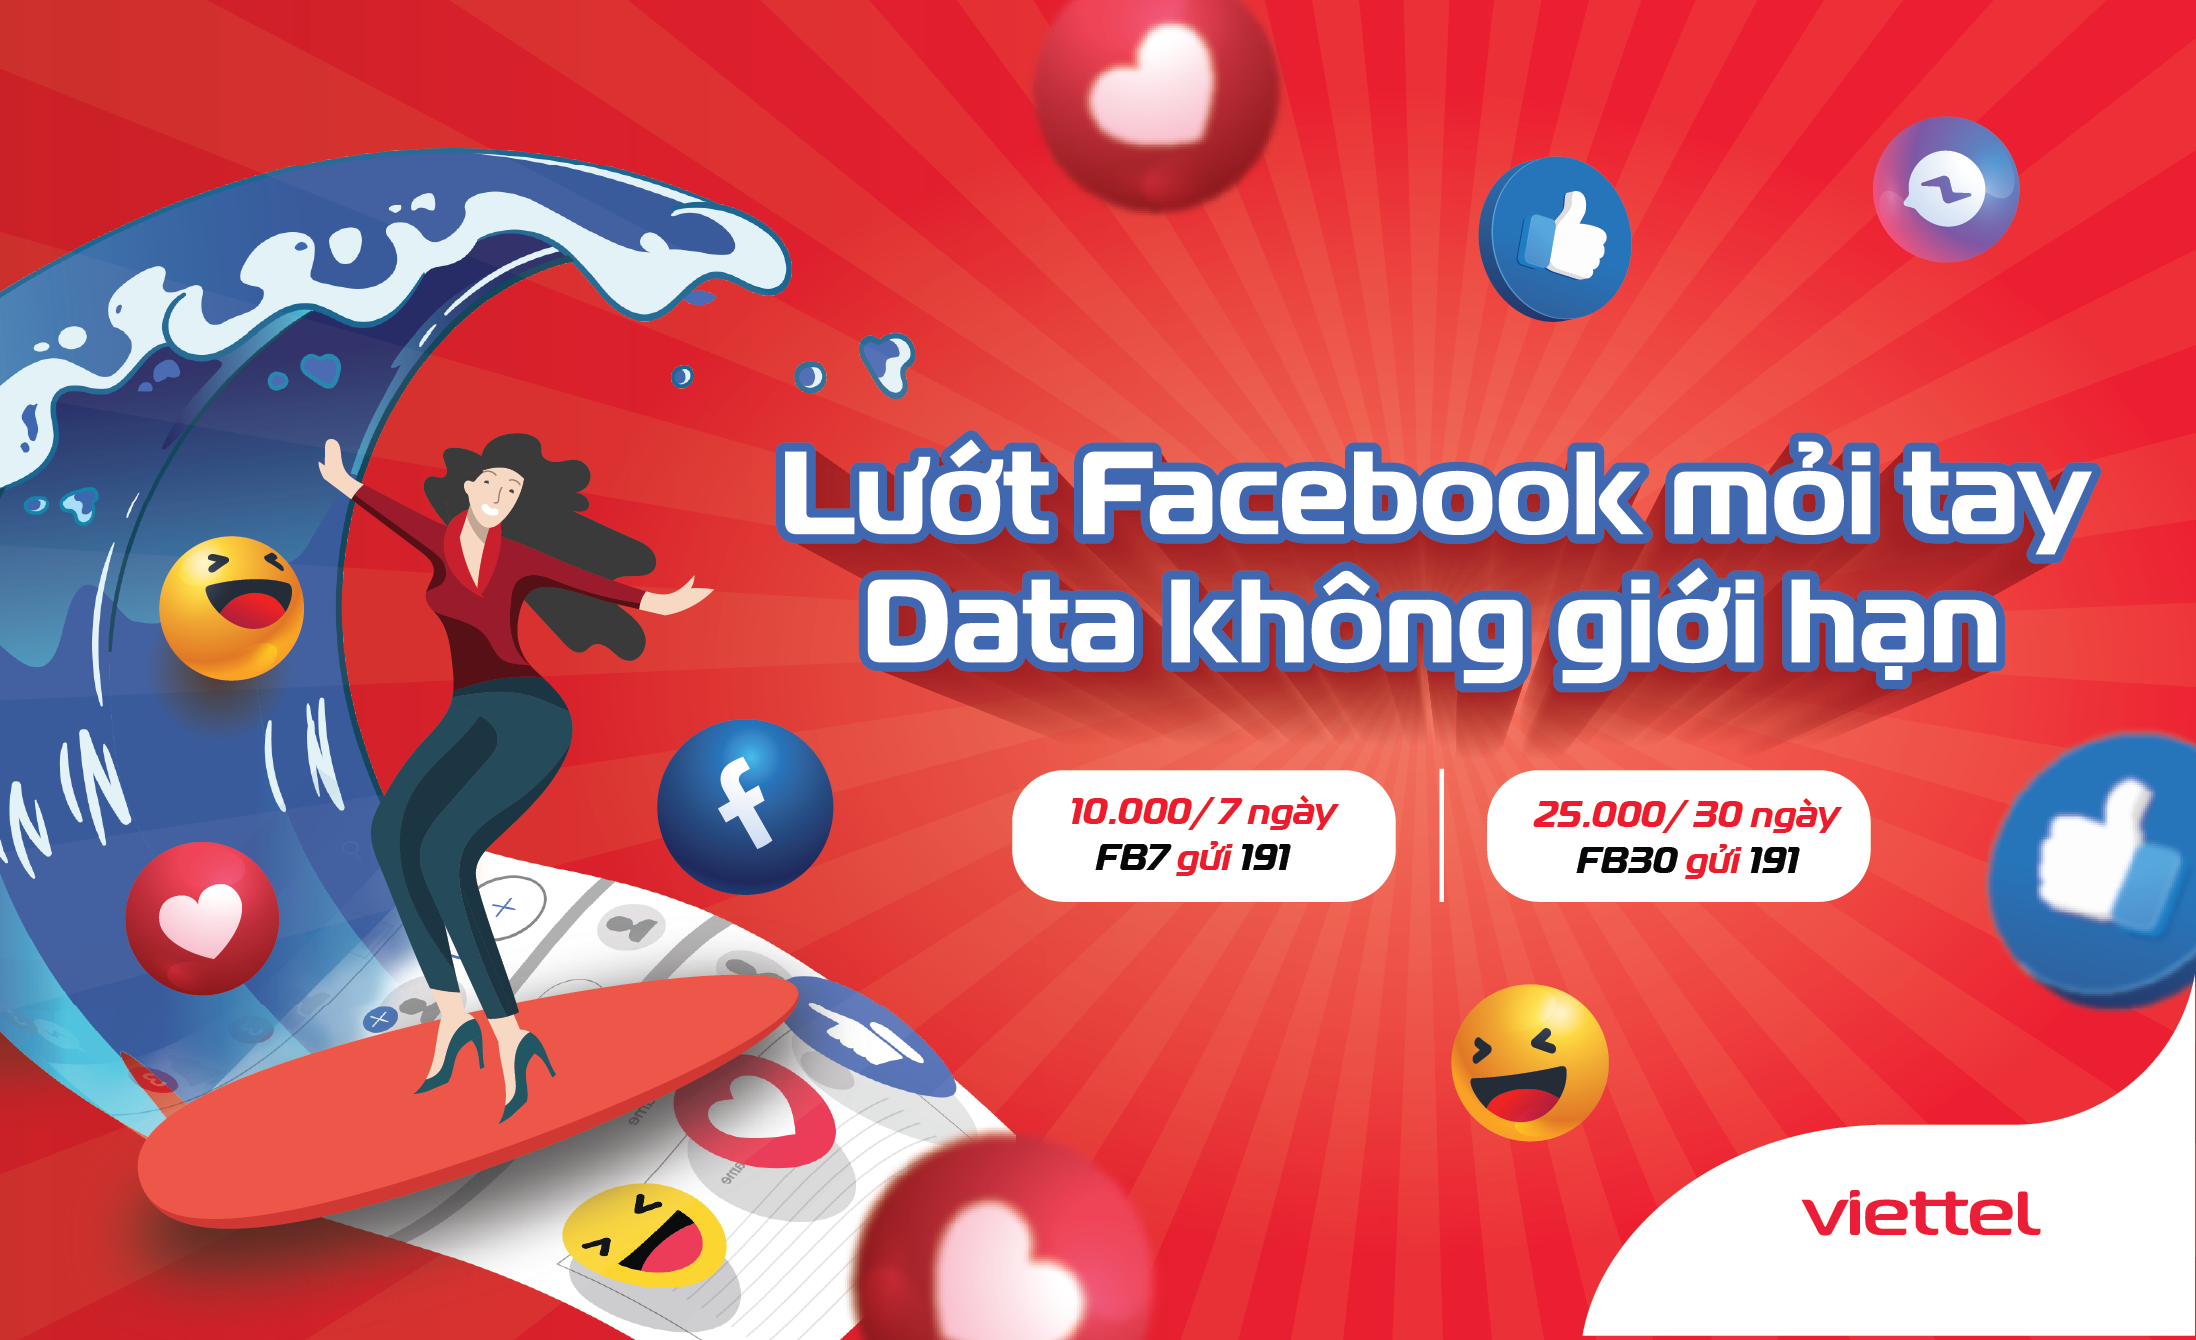 Lướt Facebook không giới hạn Data cùng Viettel với gói cước mới FB7 và FB30